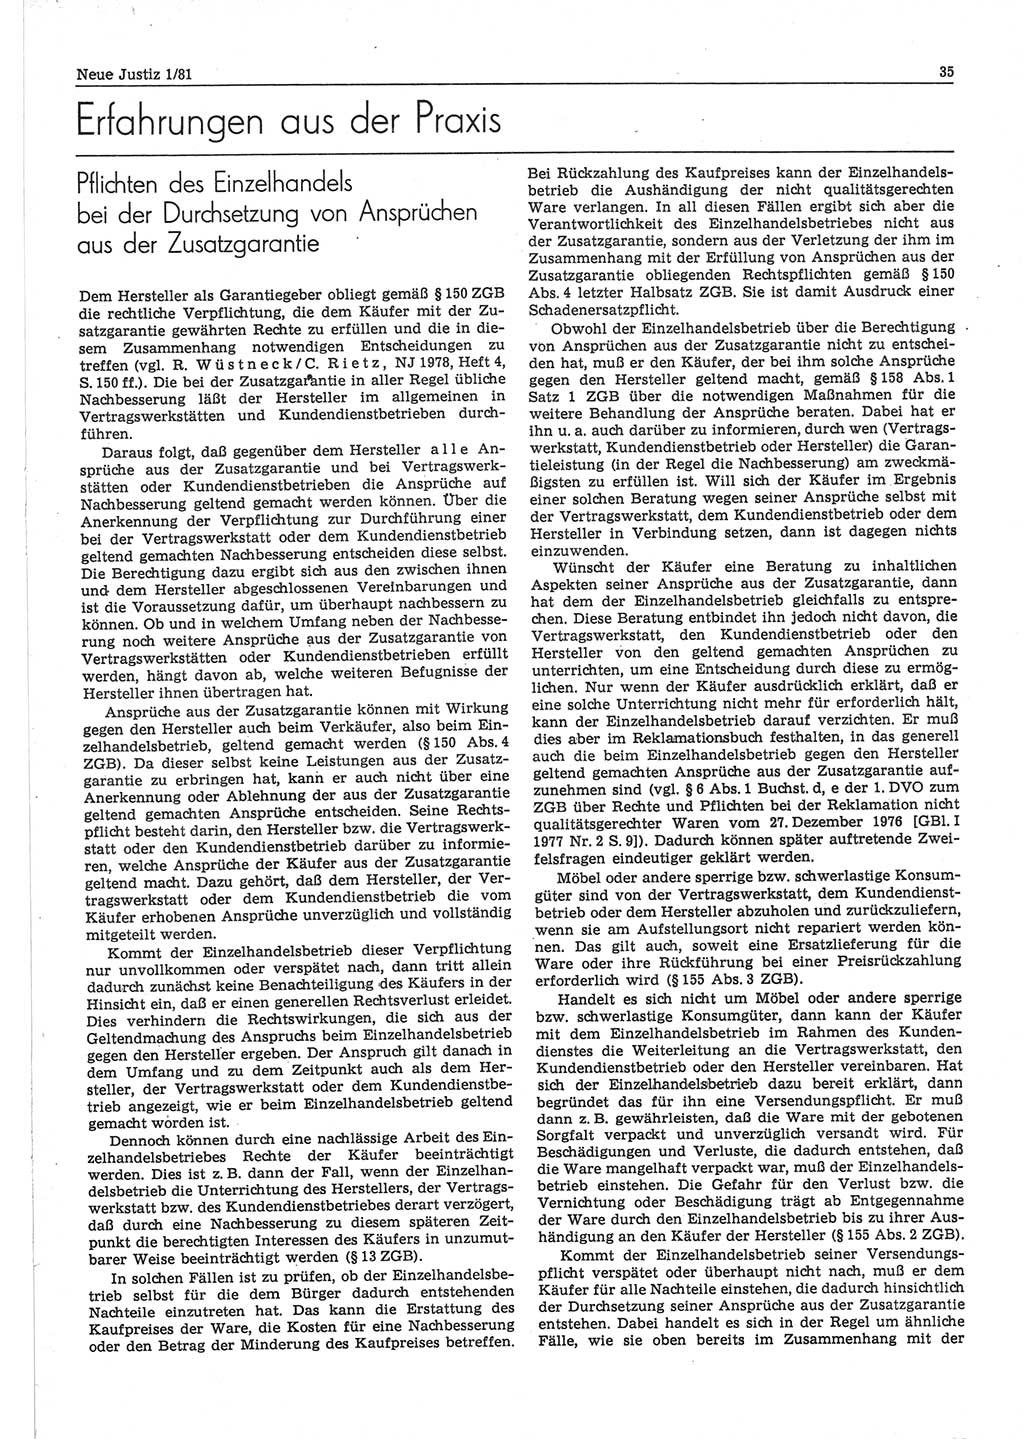 Neue Justiz (NJ), Zeitschrift für sozialistisches Recht und Gesetzlichkeit [Deutsche Demokratische Republik (DDR)], 35. Jahrgang 1981, Seite 35 (NJ DDR 1981, S. 35)